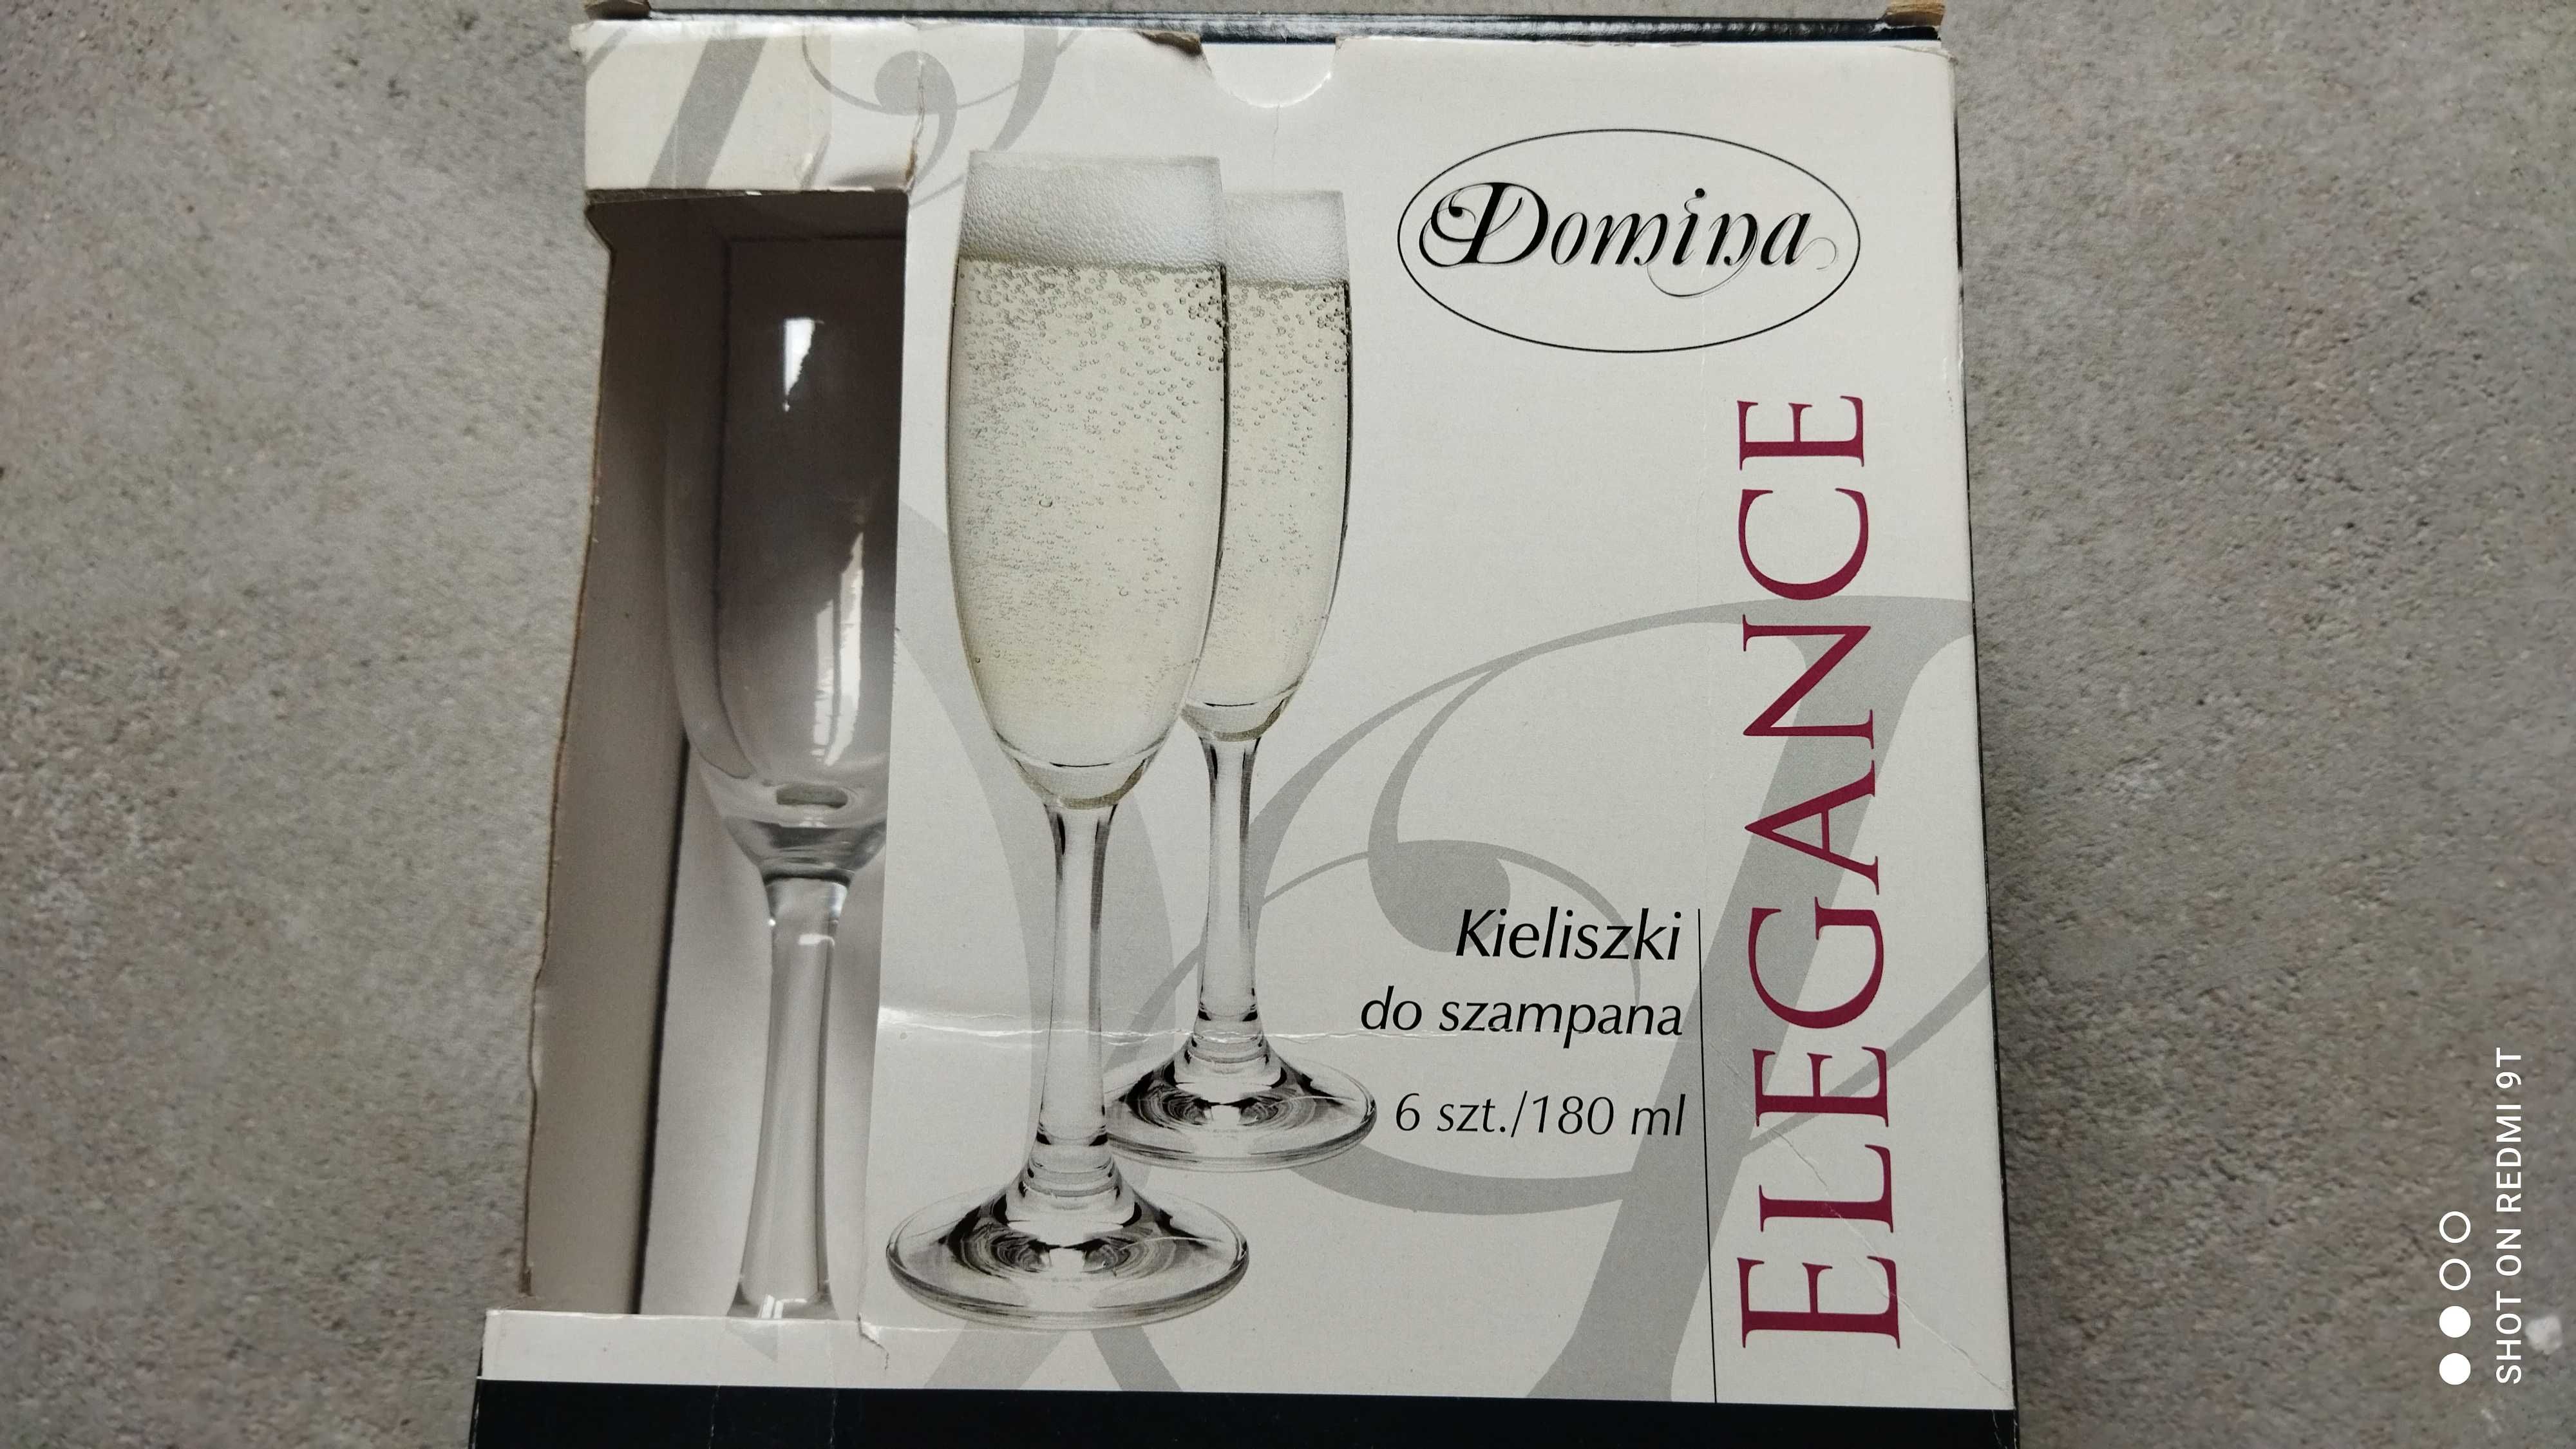 Kieliszki do szampana Domina elegance 6szt 180ml